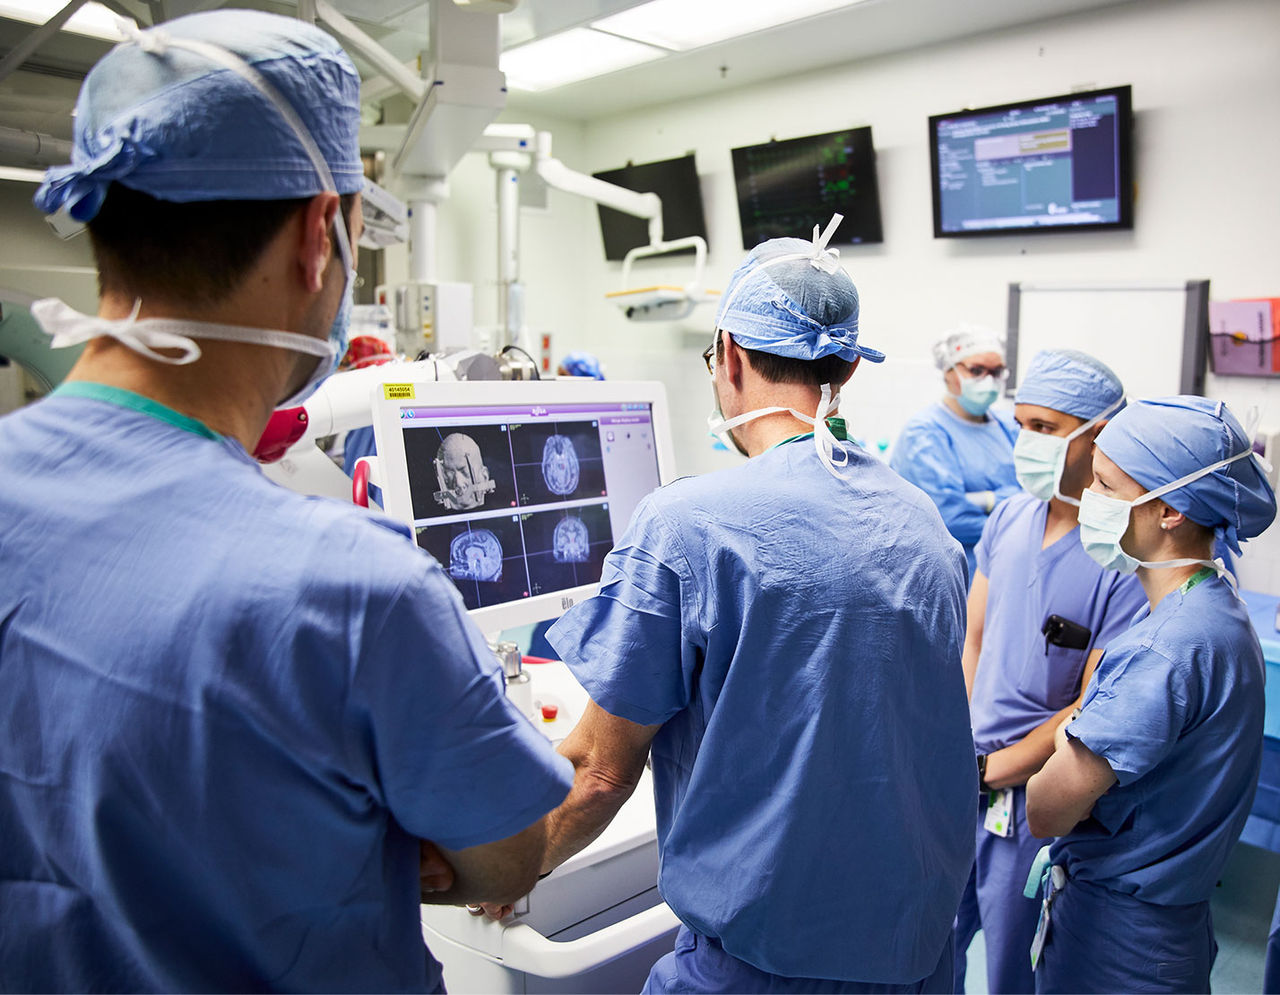 أطباء في غرفة عمليات يفحصون صور أشعة مريض على شاشة